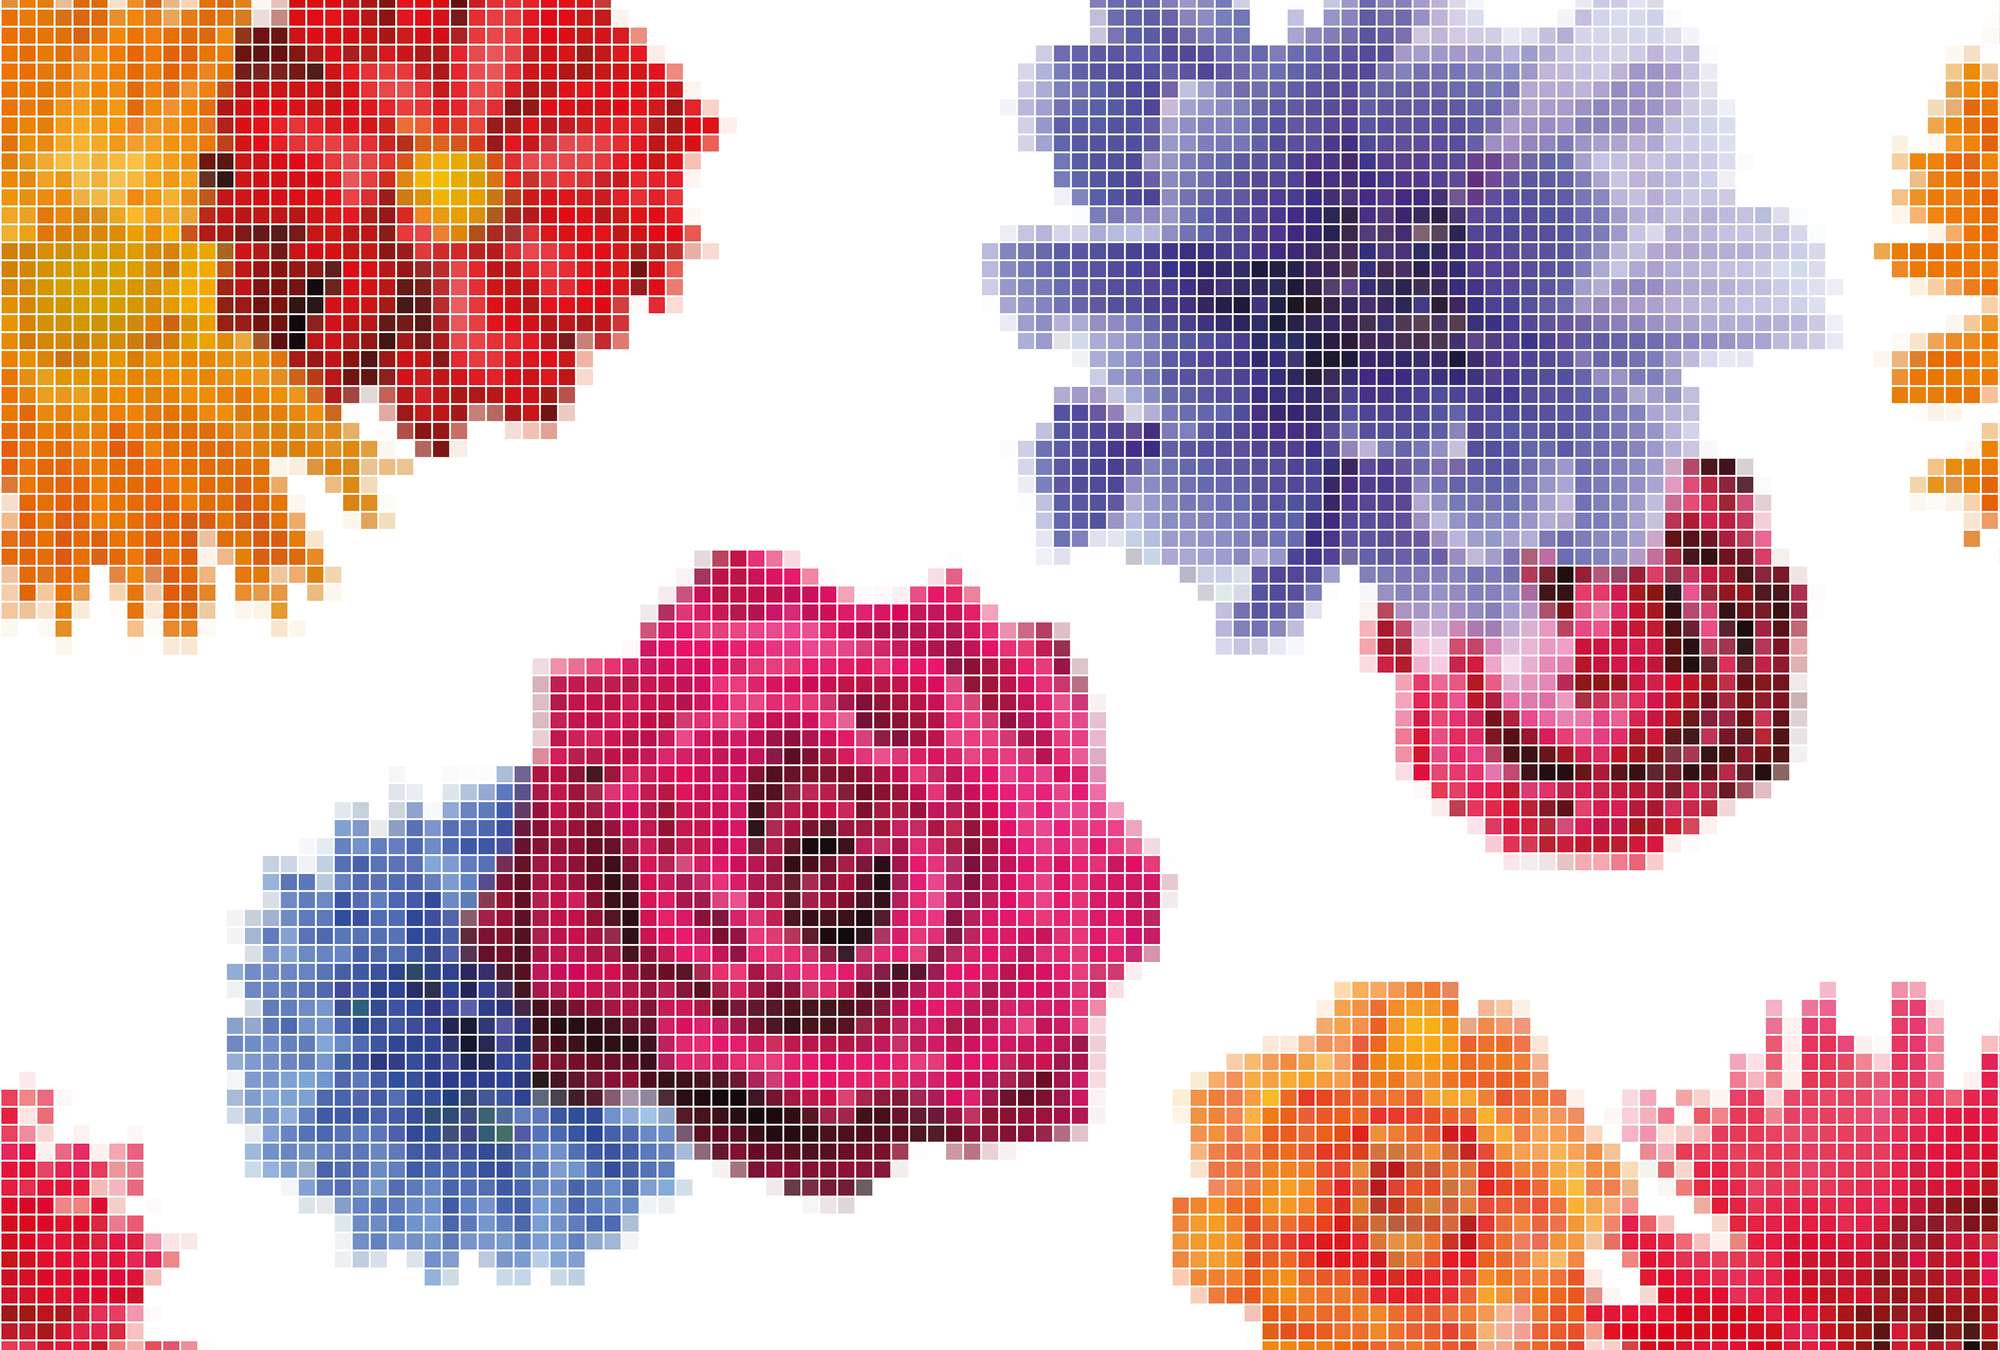             Pixel artwork mural - roses in graphic design
        